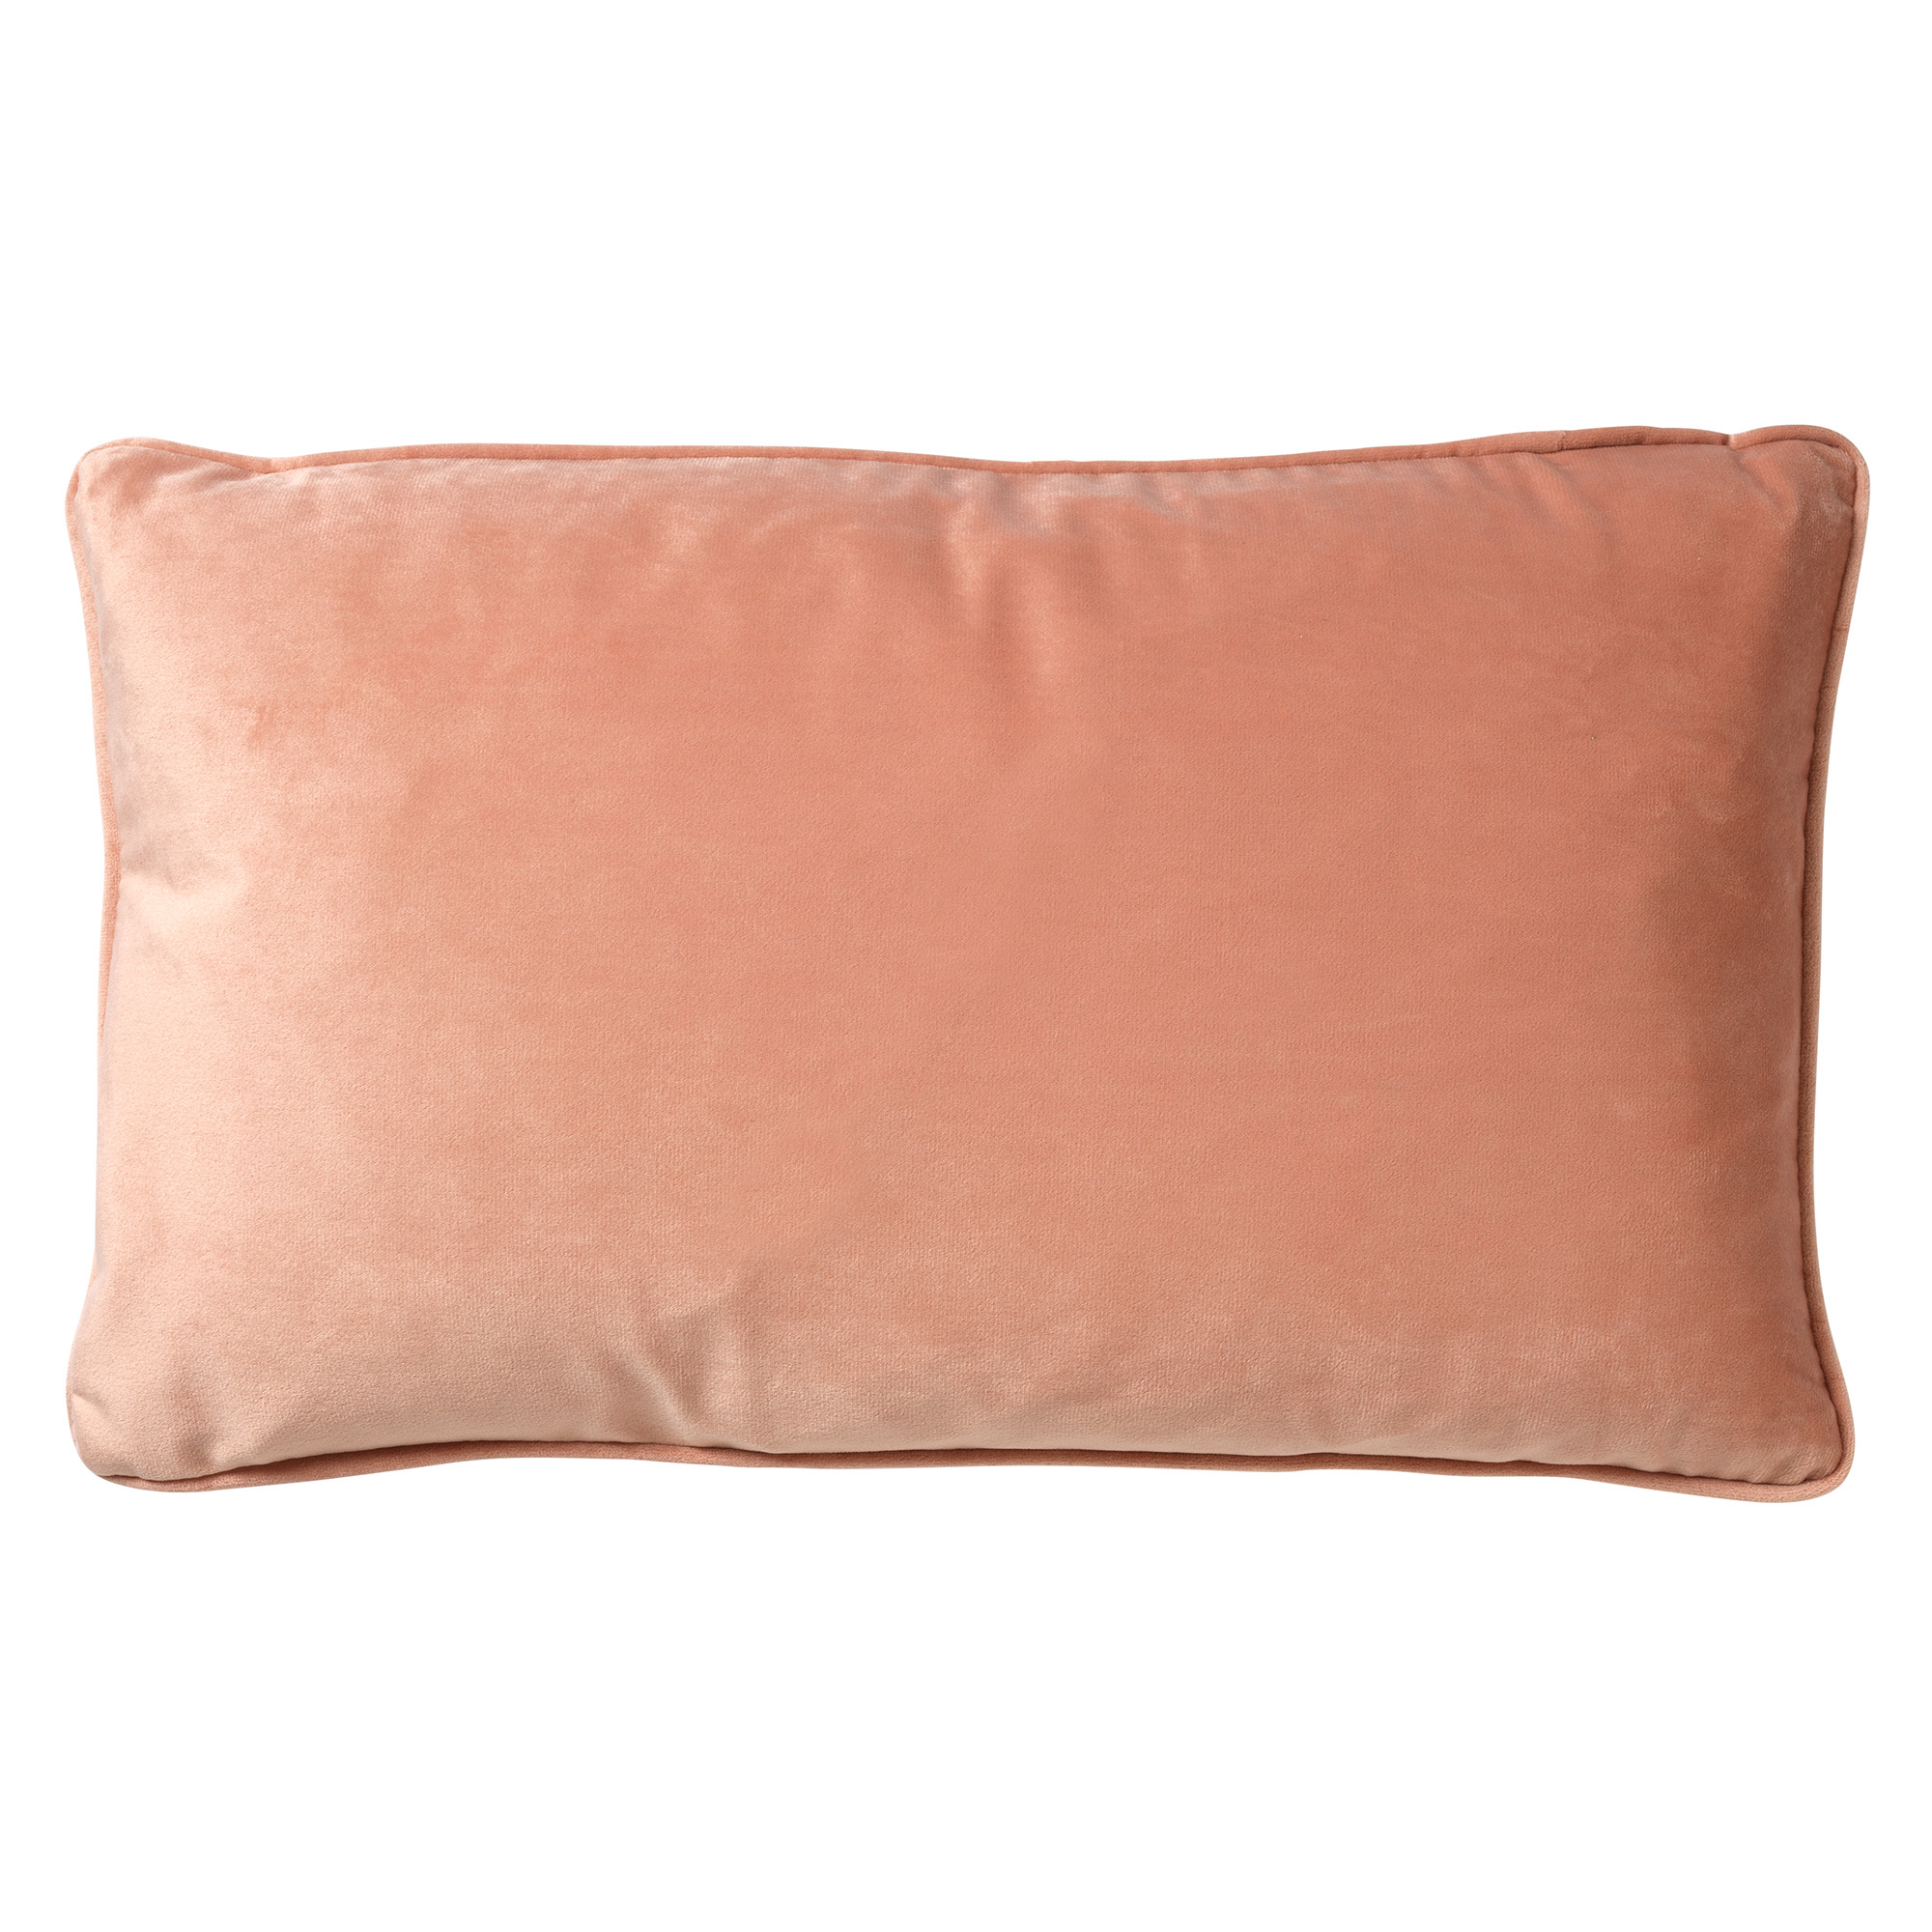 FINN - Cushion 30x50 cm Muted Clay - pink